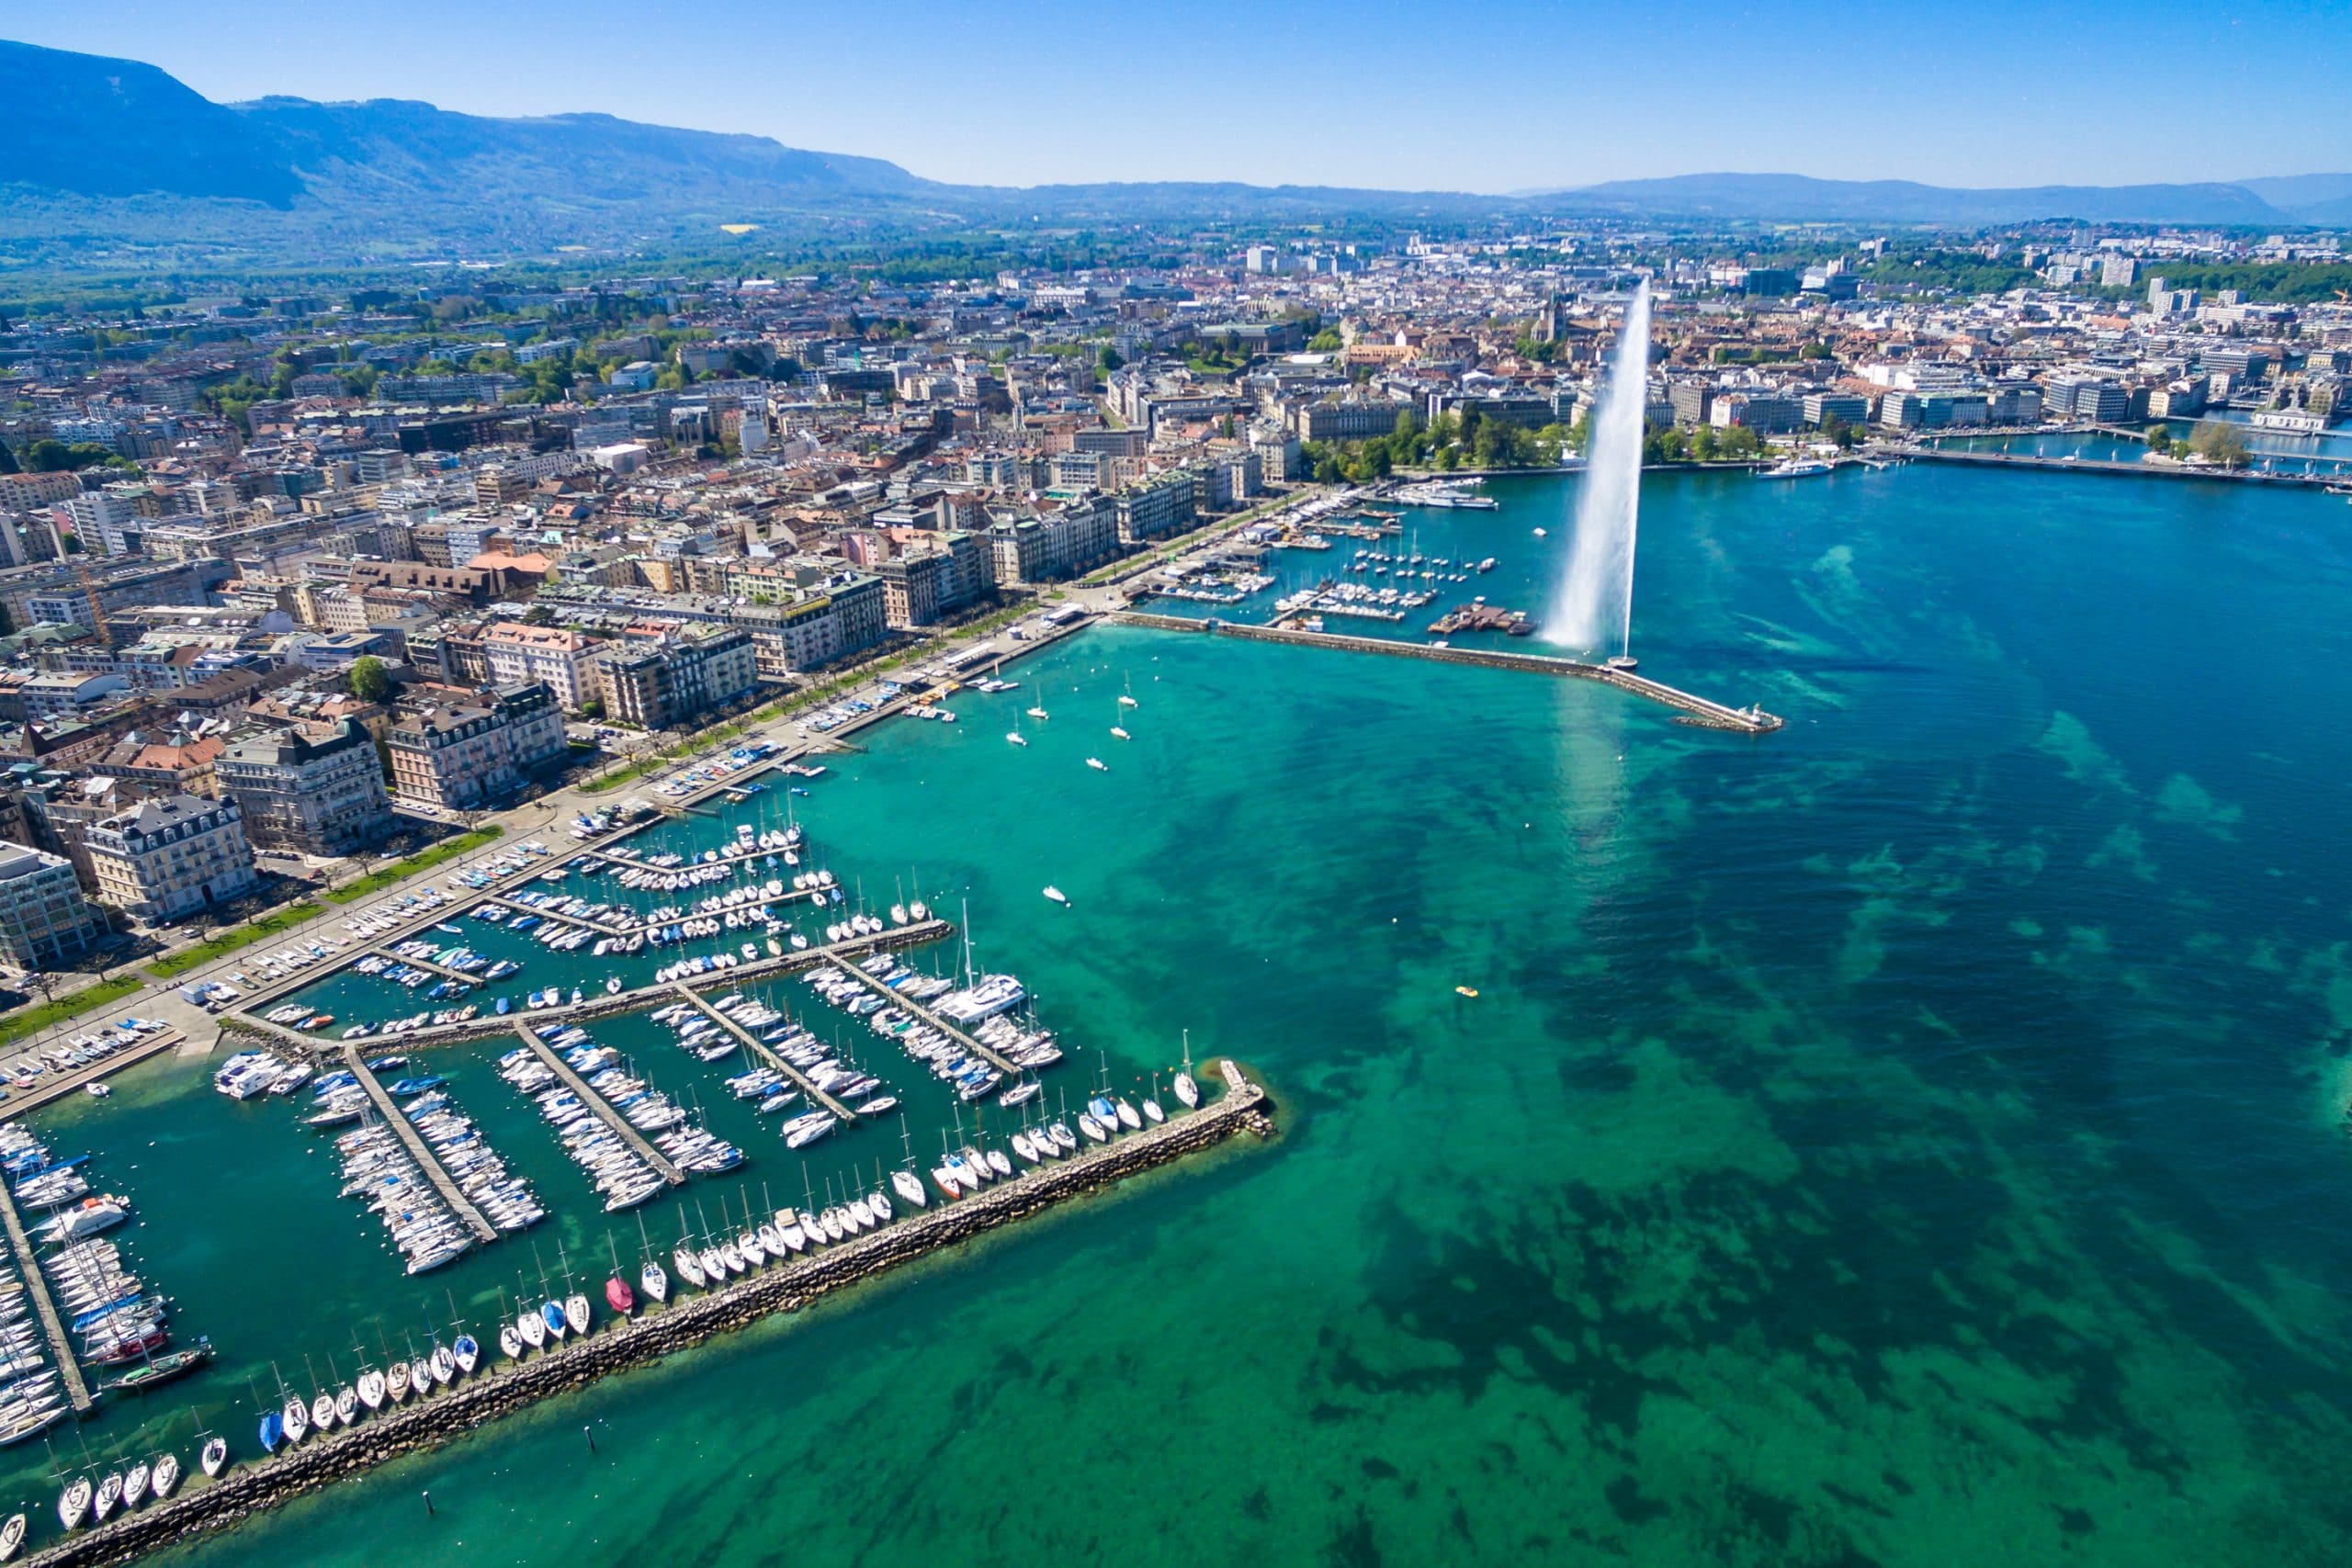 Vue aérienne de Genève et de son jet d'eau emblématique, à découvrir lors de votre séjour linguistique en Suisse